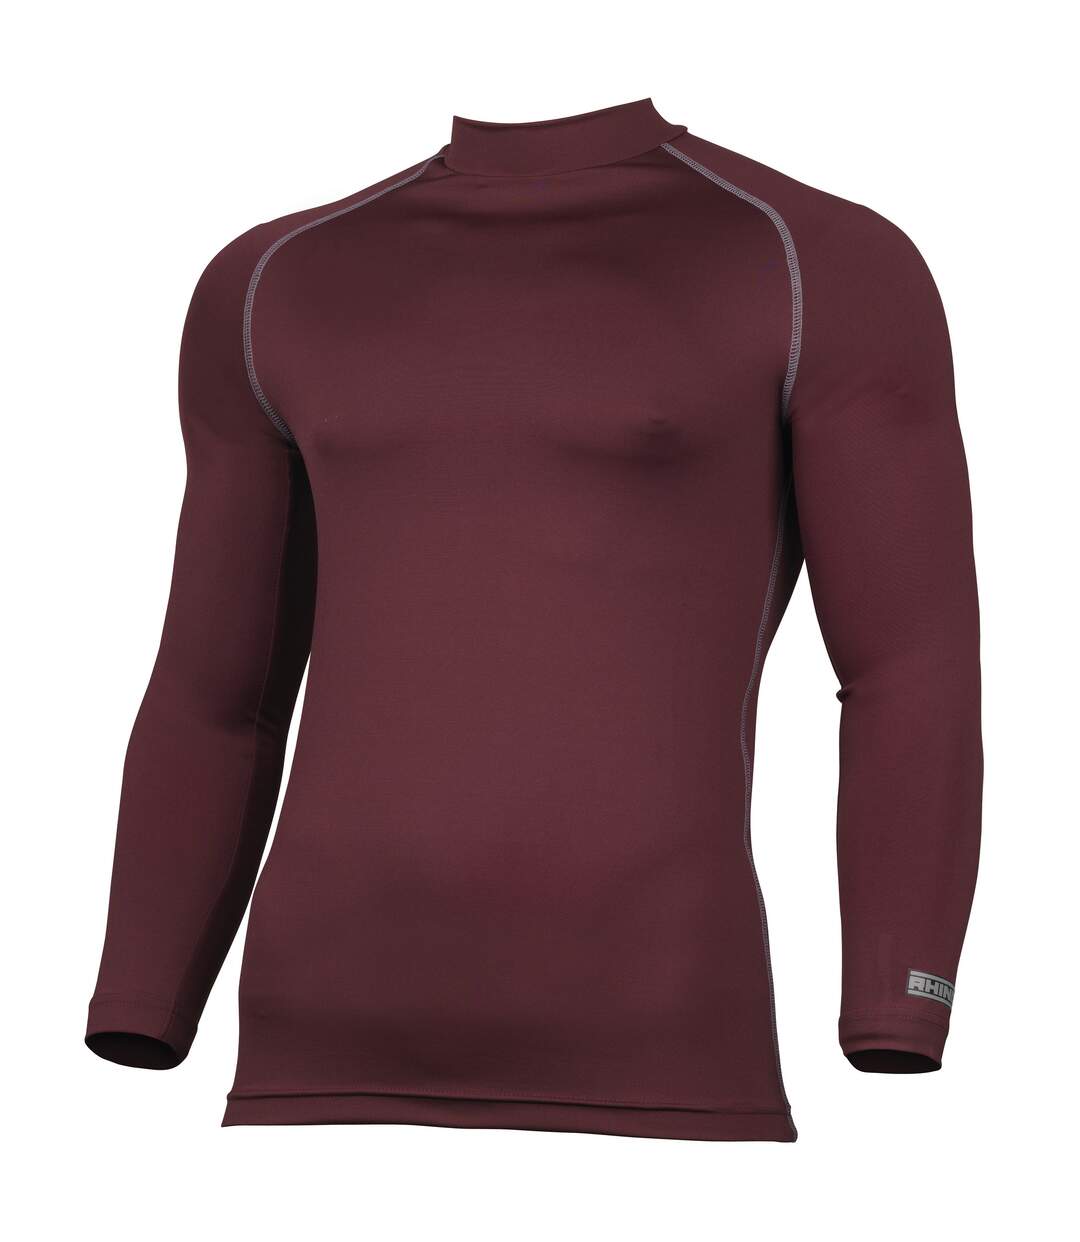 Rhino - T-shirt base layer à manches longues - Homme (Bordeaux) - UTRW1276